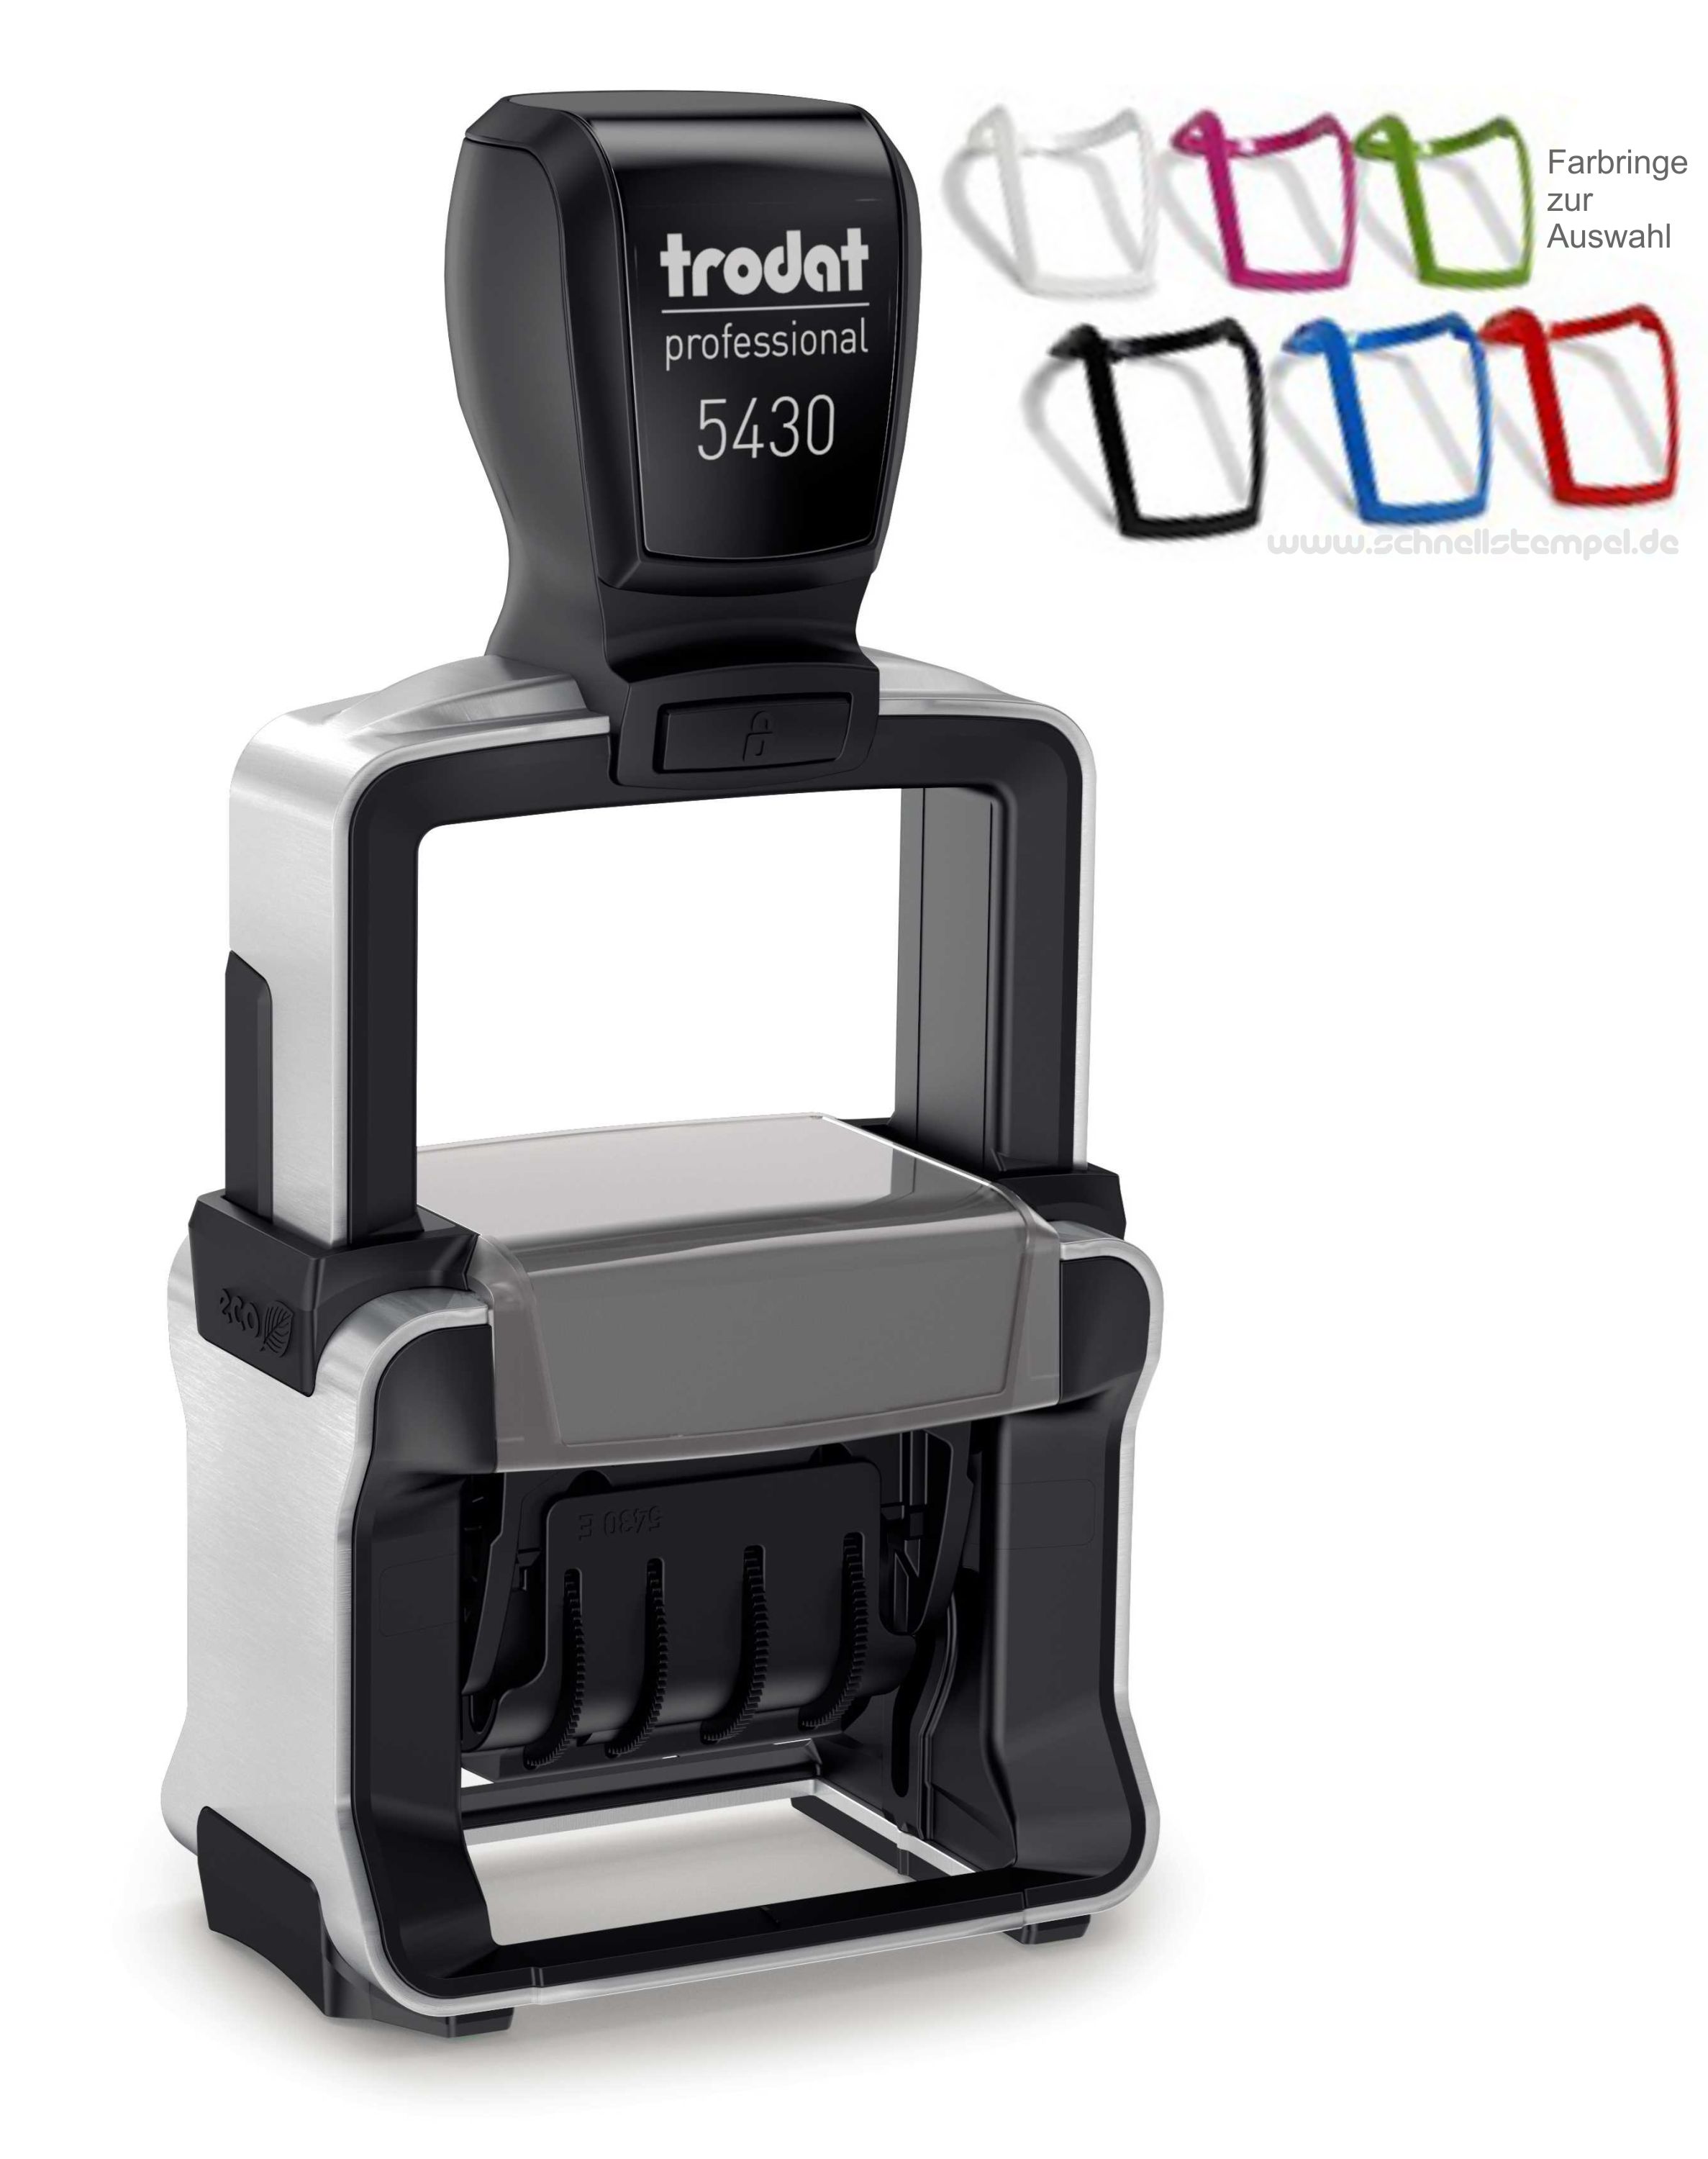 Trodat-Professional-5430-hochwertiger-Stempel-Abdruckgroesse-41x24mm-Datum-verstellbar